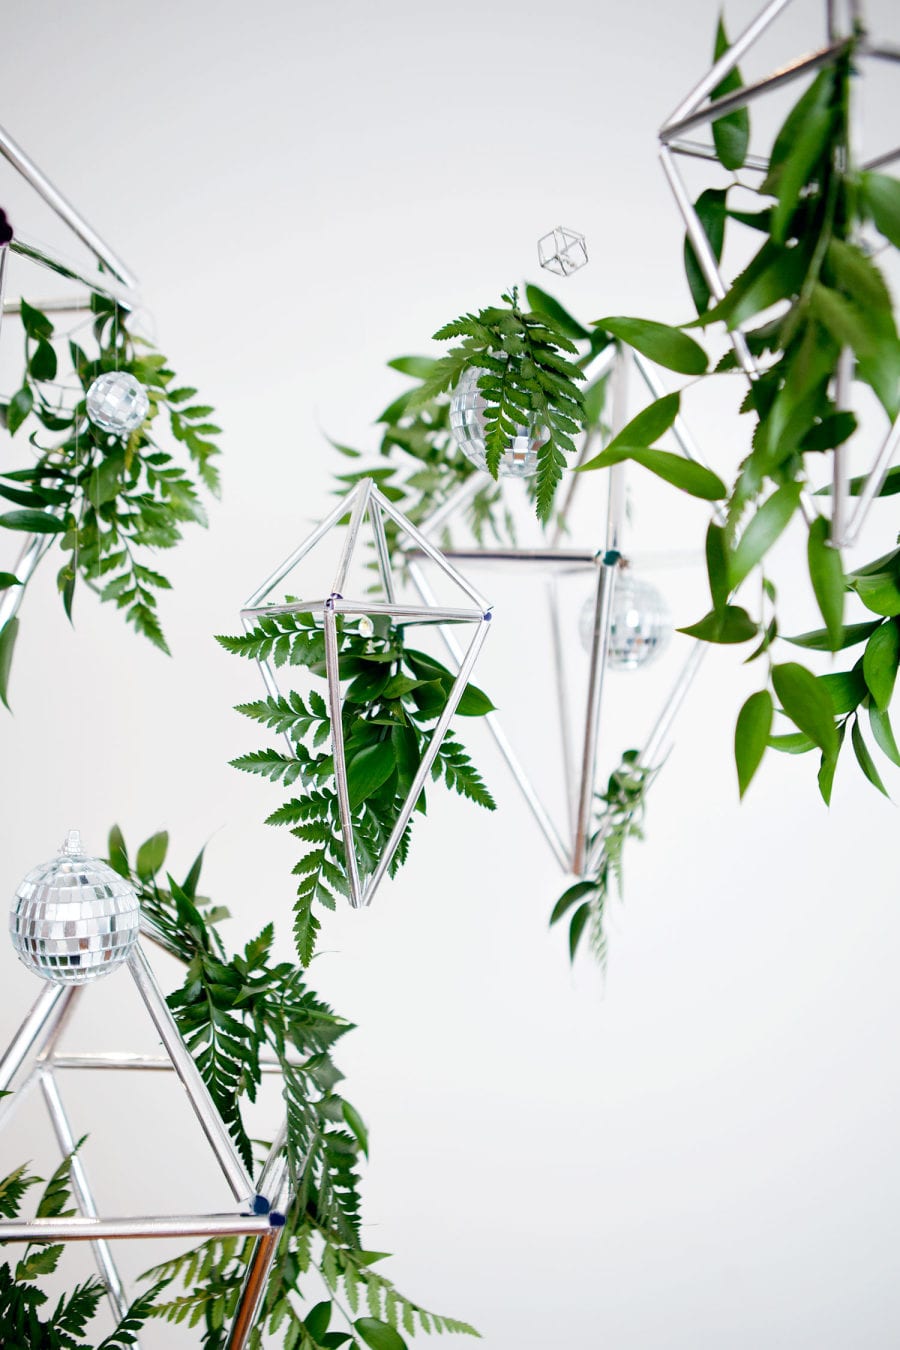 Winter wedding ideas for decor—Silver Geometric decor hanging amidst ferns